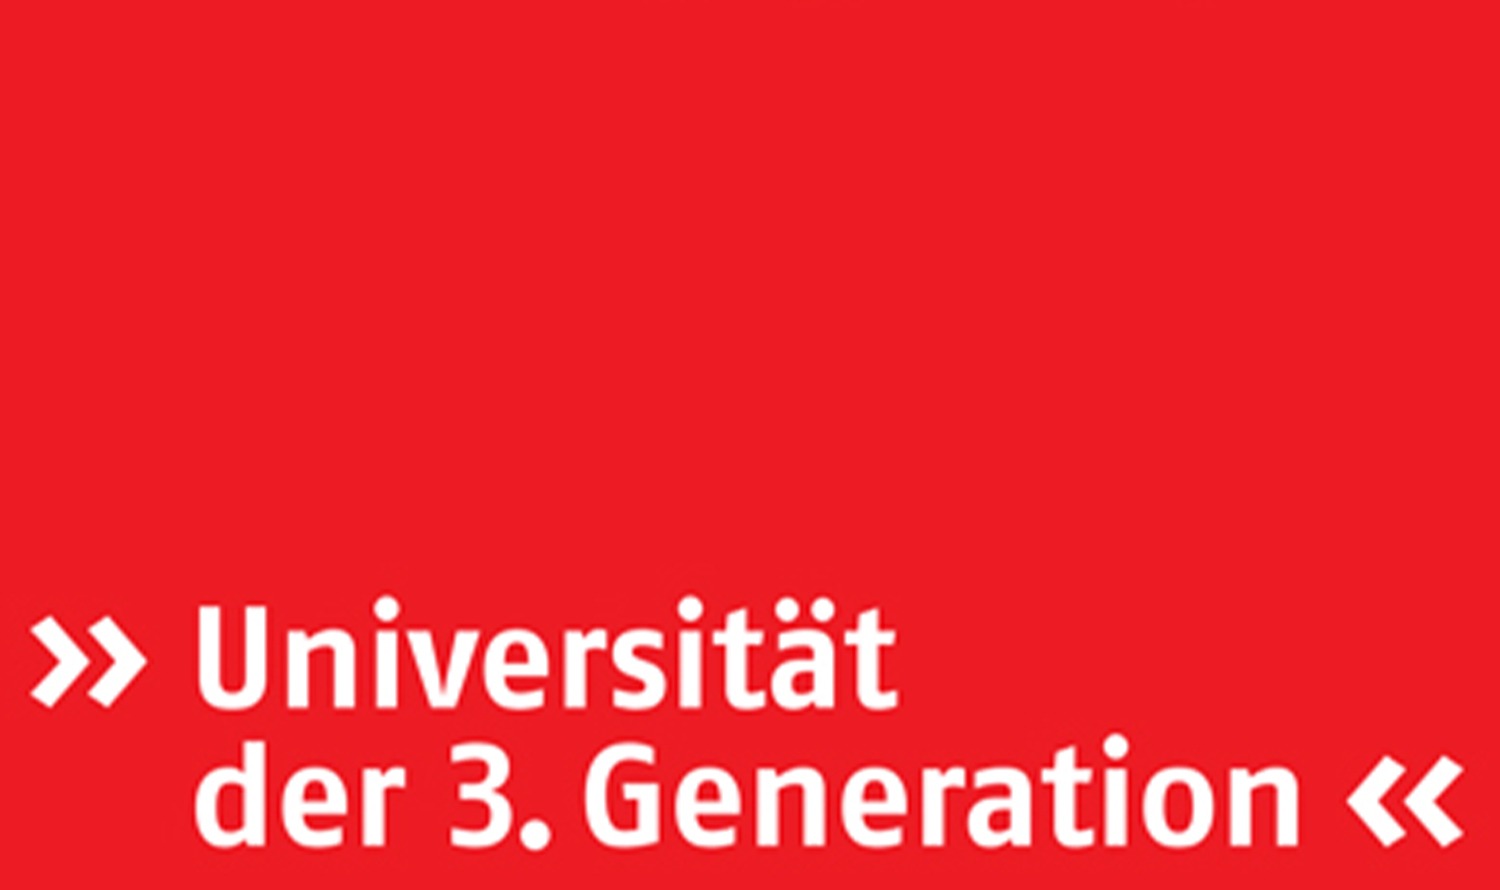 Auf rotem Felde steht der Schriftzug "Universität der 3. Generation".